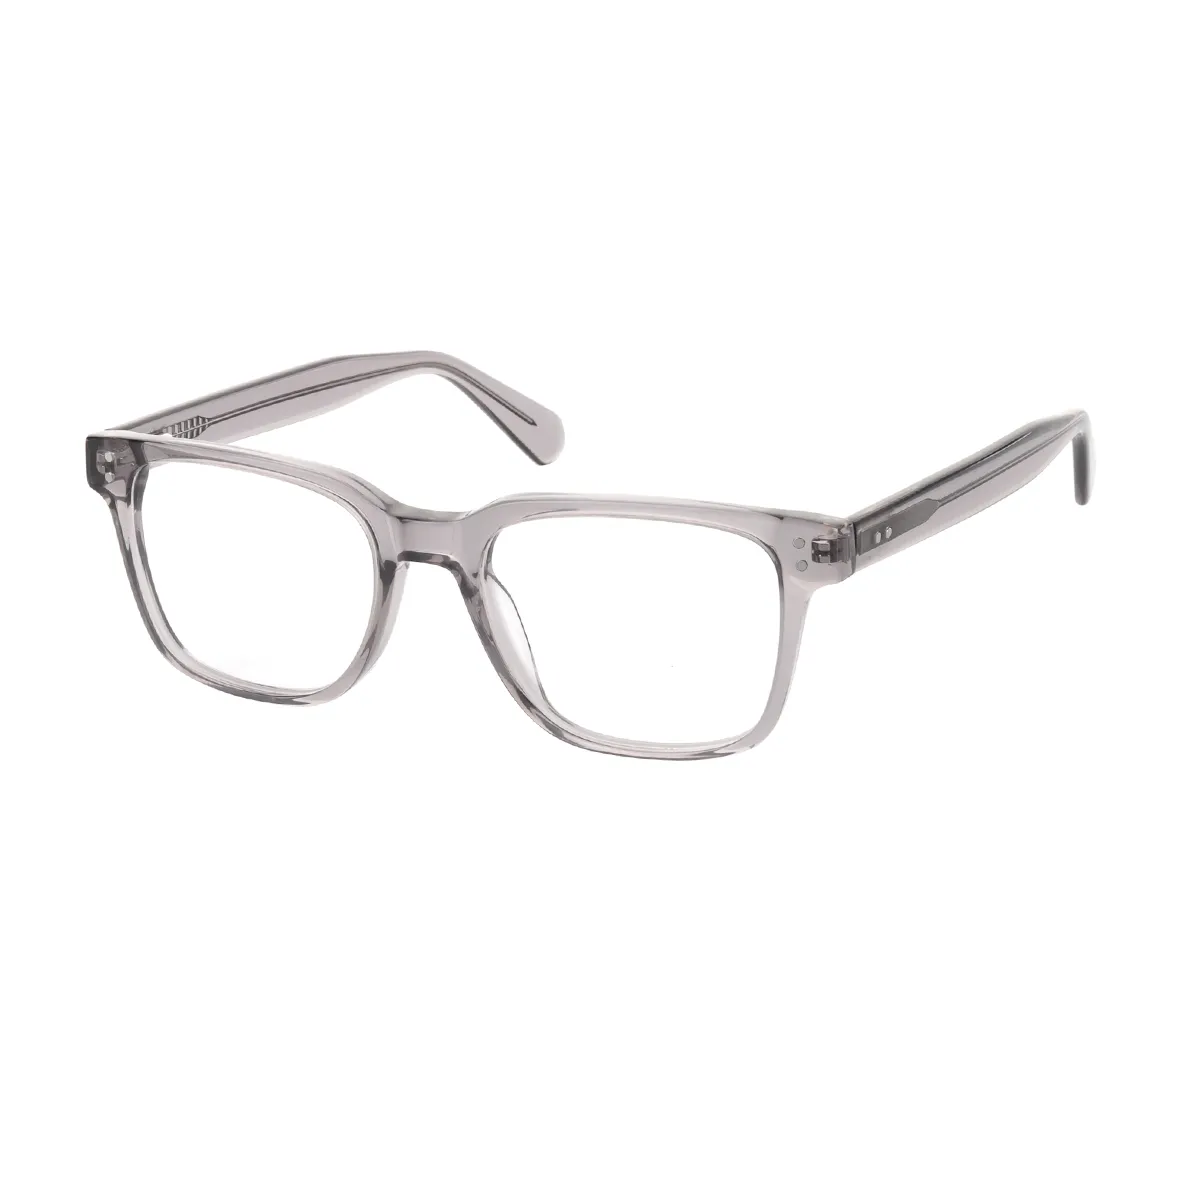 Cecilia - Square Grey Glasses for Women